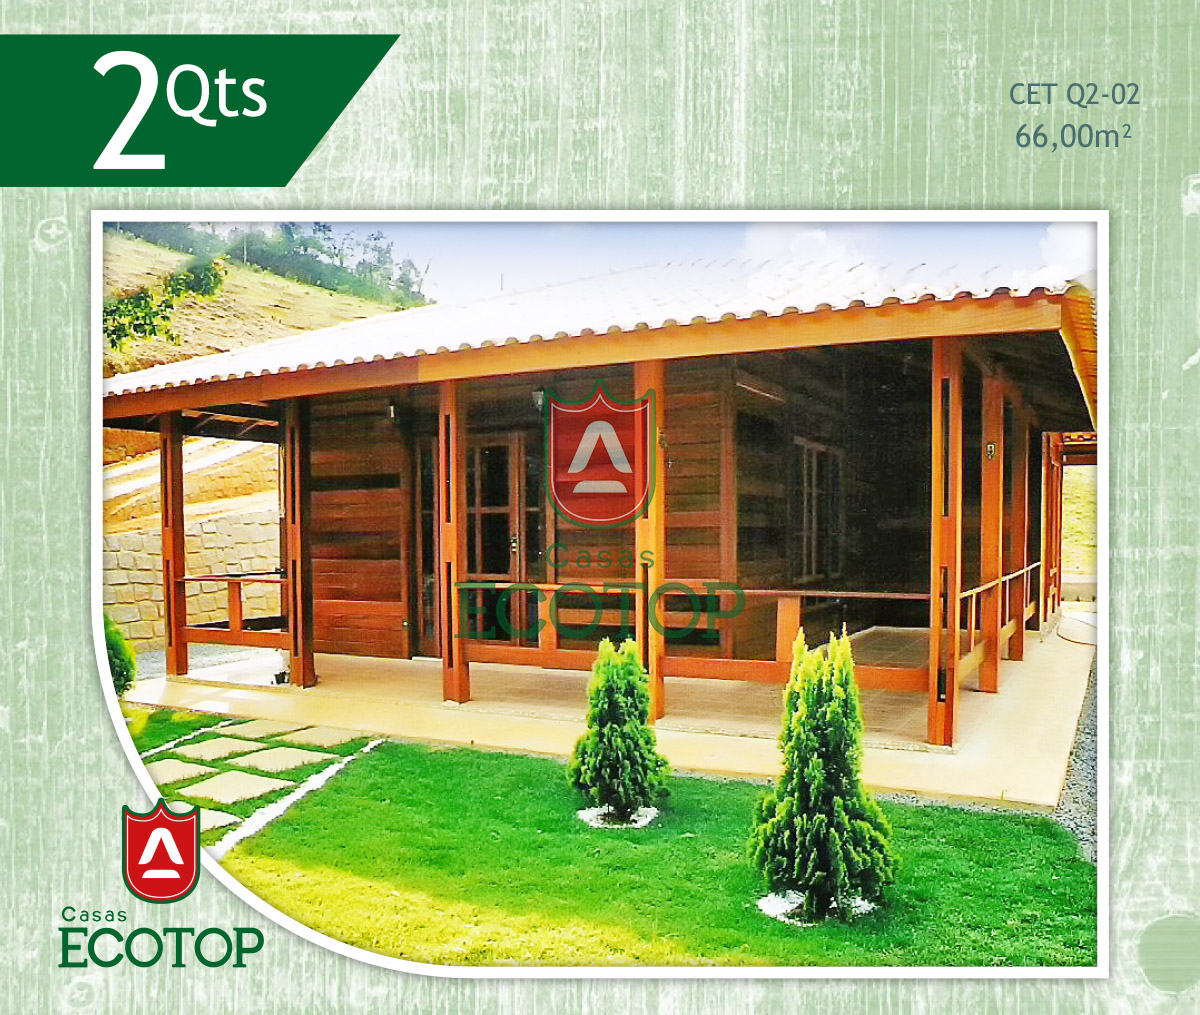 cet-02-fachada-casas-de-madeira-ecotop.cdr